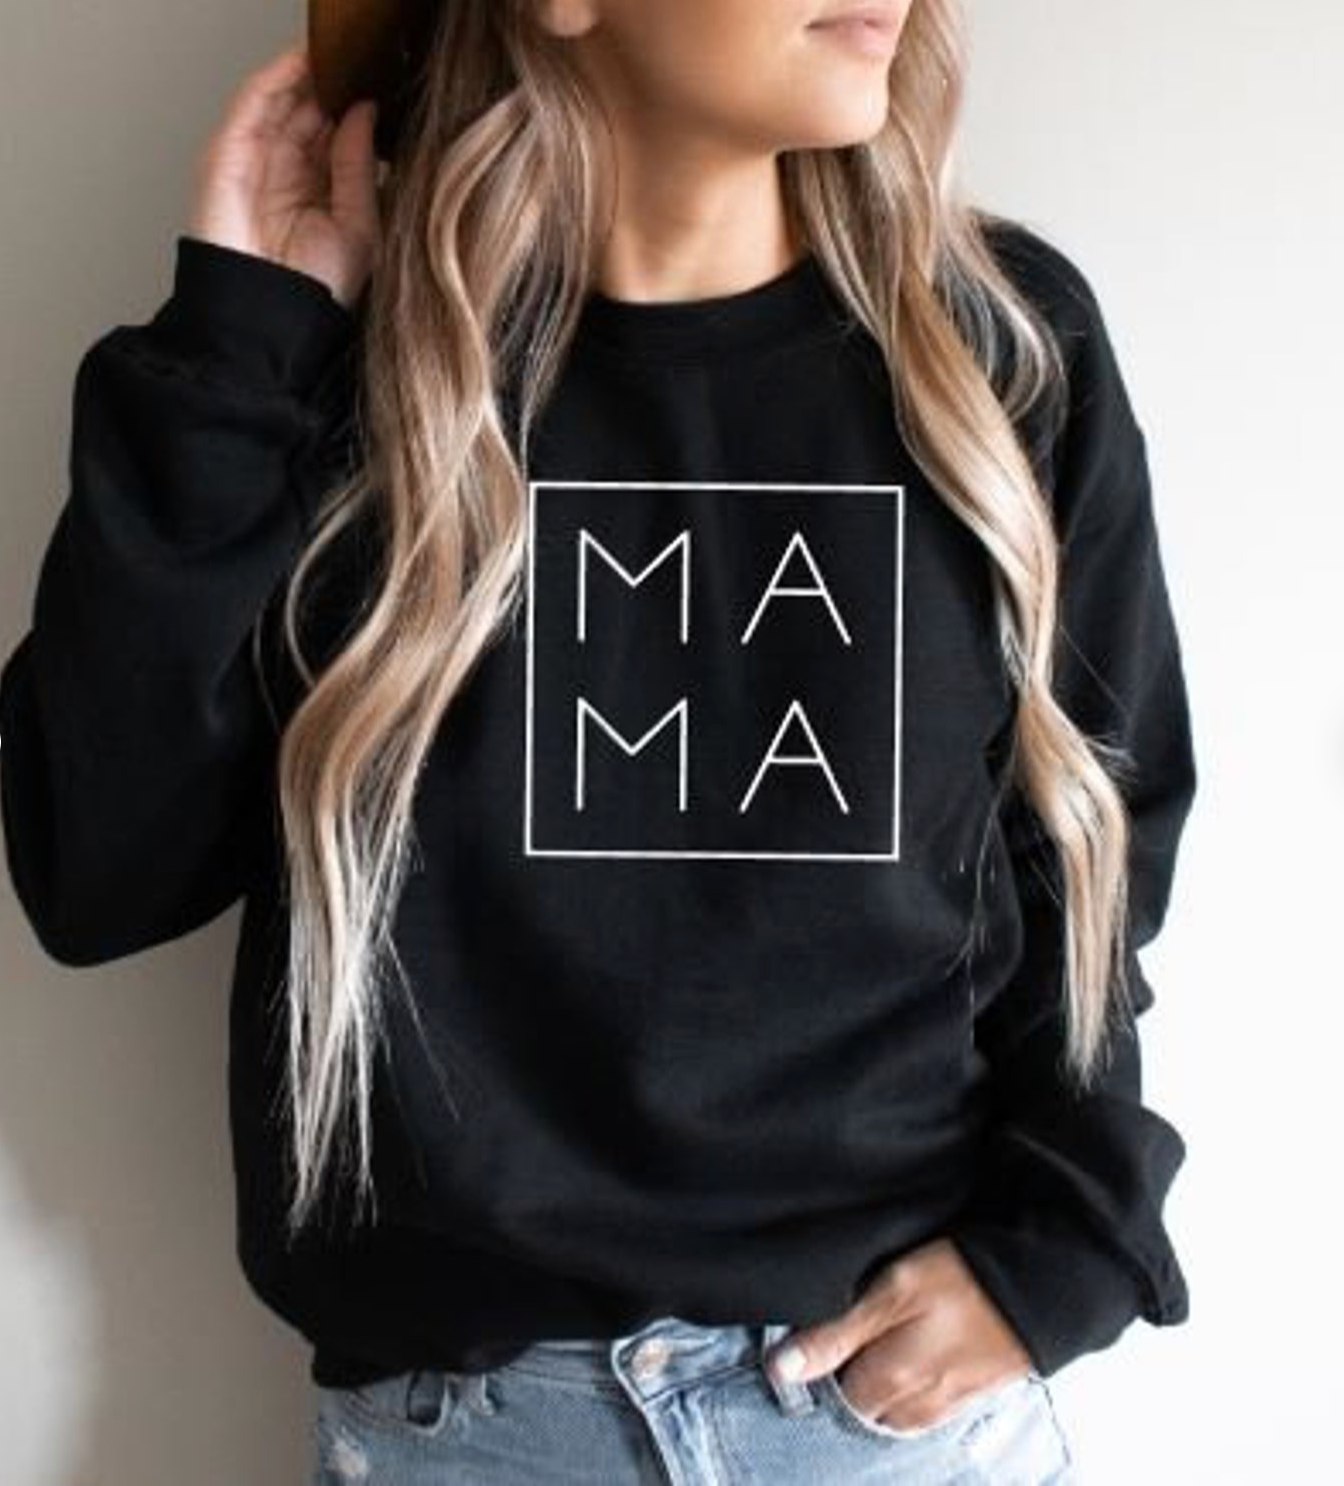 MAMA Square Women's Sweatshirt